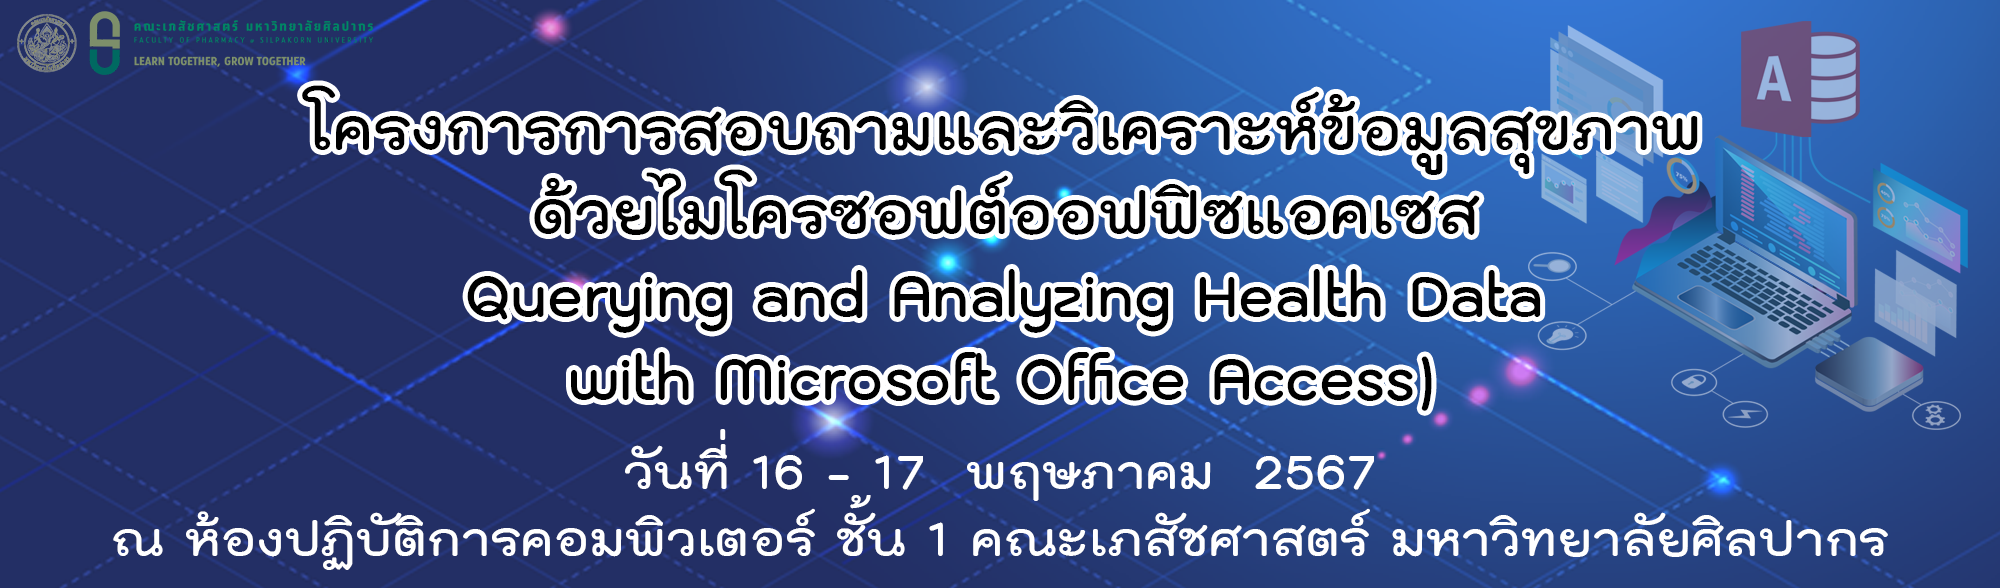 โครงการการสอบถามและวิเคราะห์ข้อมูลสุขภาพด้วยไมโครซอฟต์ออฟฟิซแอคเซส  (Querying and Analyzing Health Data with Microsoft Office Access) Onsite meeting